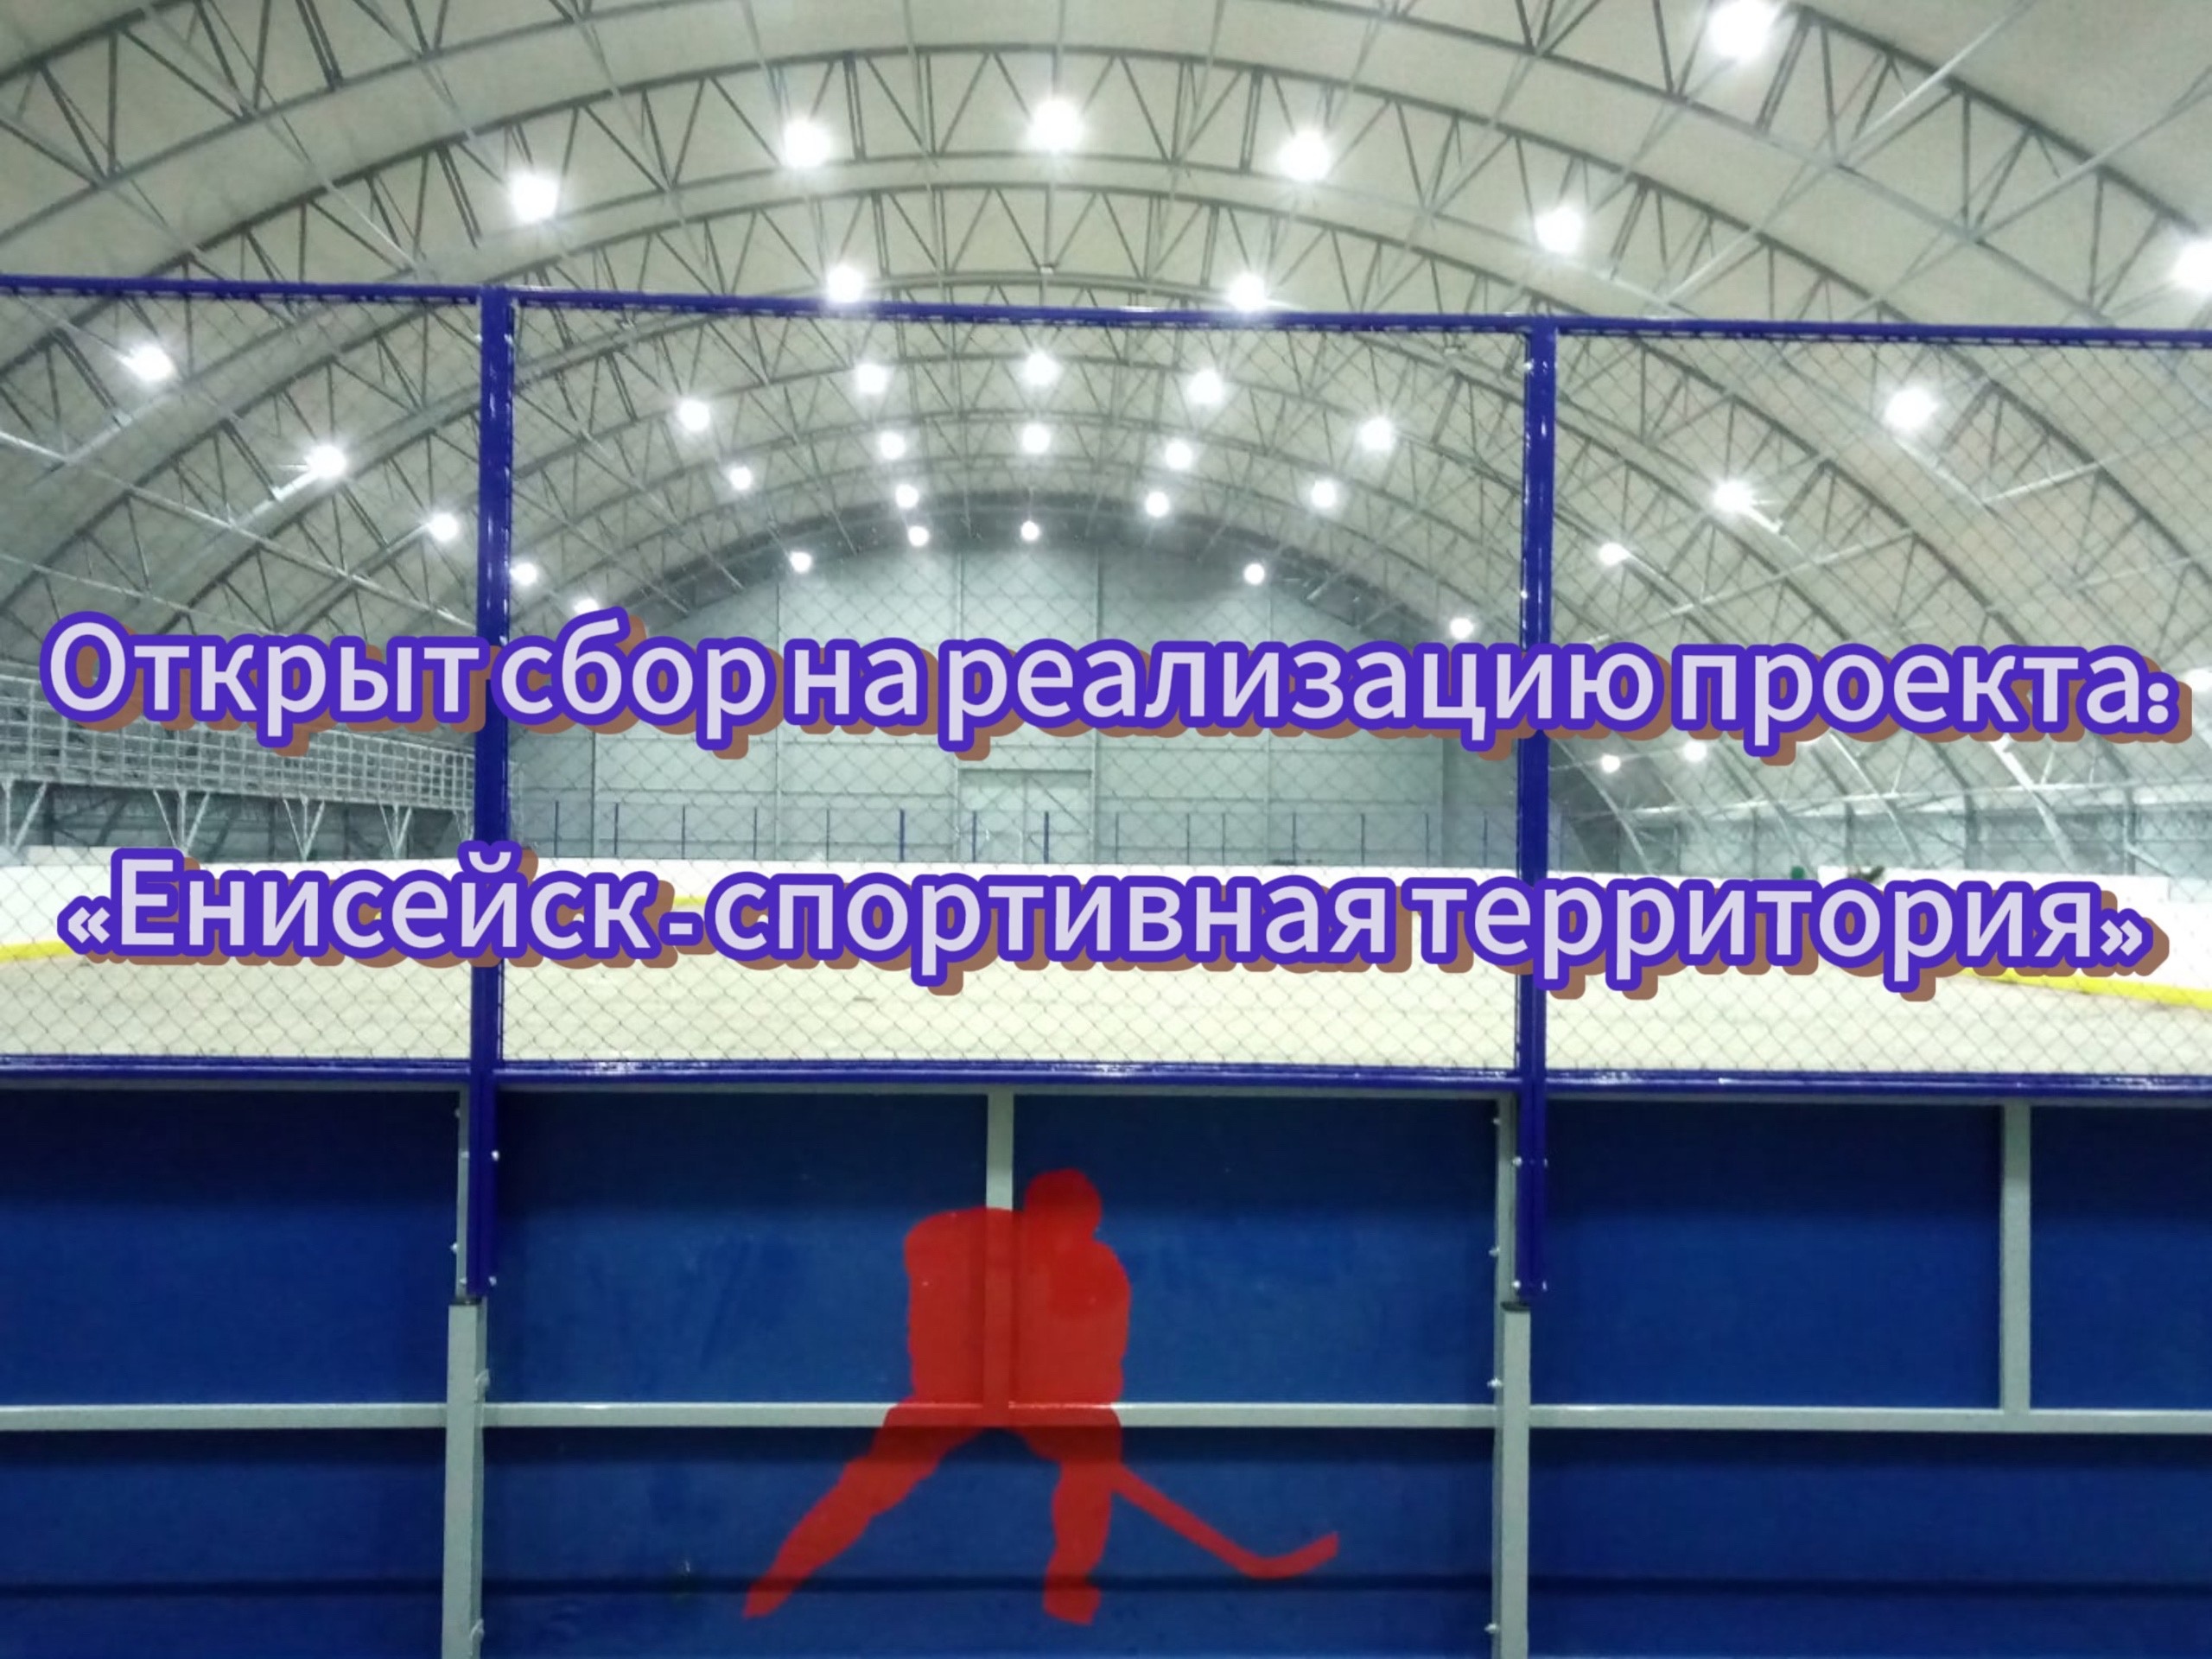 Внимание ❗сбор средств на реализацию проекта «Енисейск - спортивная территория» ‼.